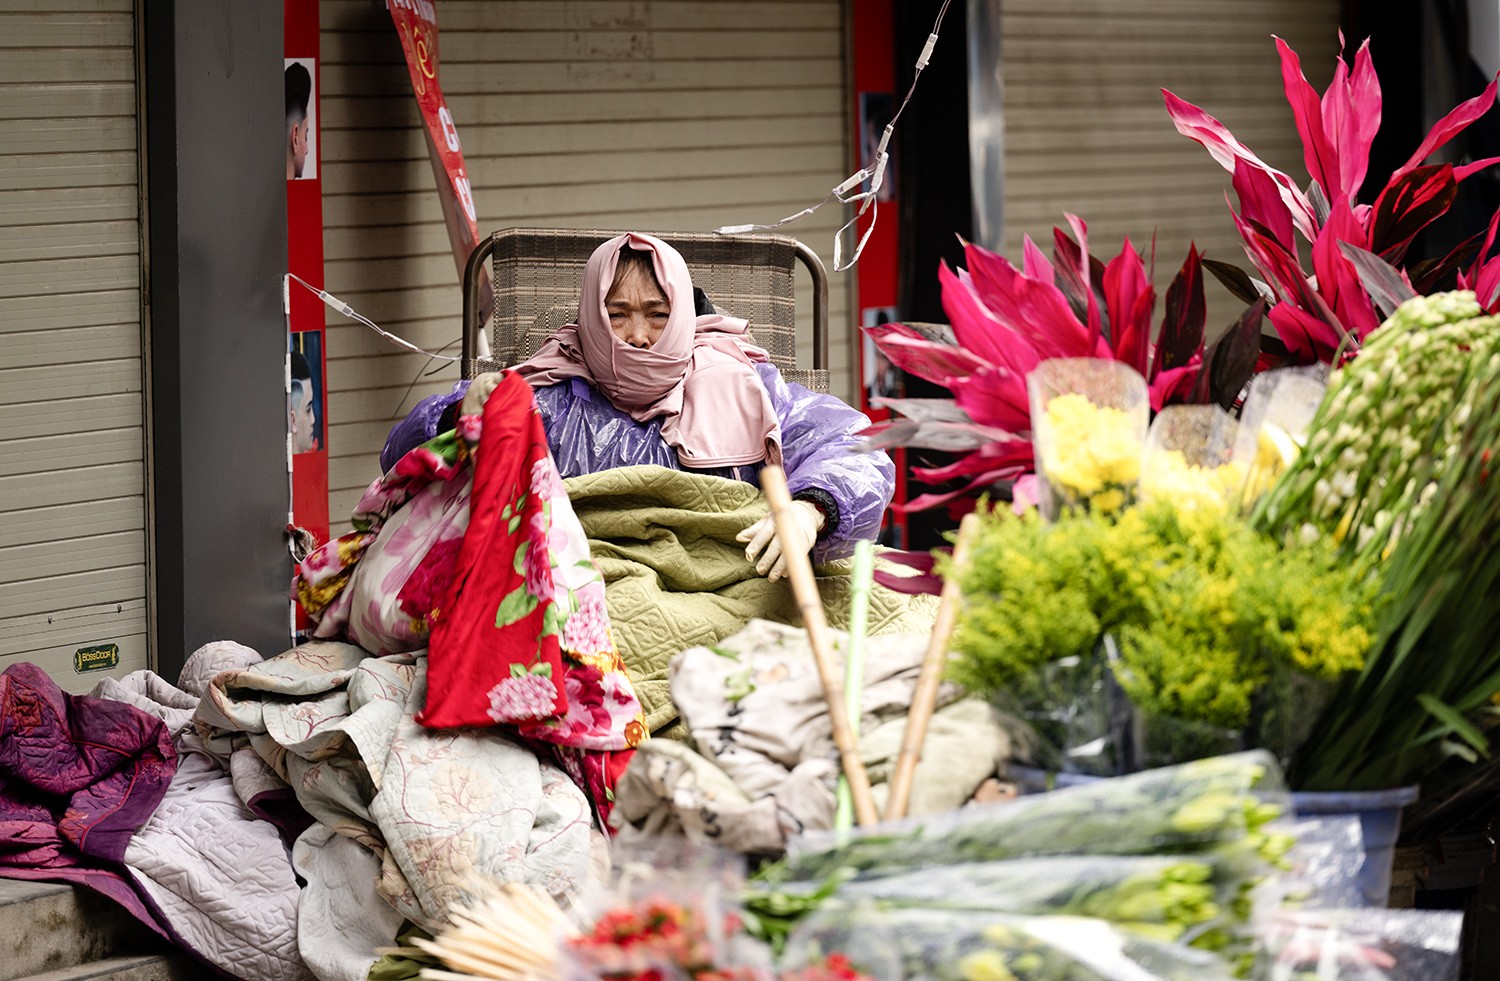 Để chống lại cái lạnh, người phụ nữ bán hoa trên phố Trung Phụng mặc áo ấm, áo mưa và mang thêm bên mình rất nhiều chăn ấm.